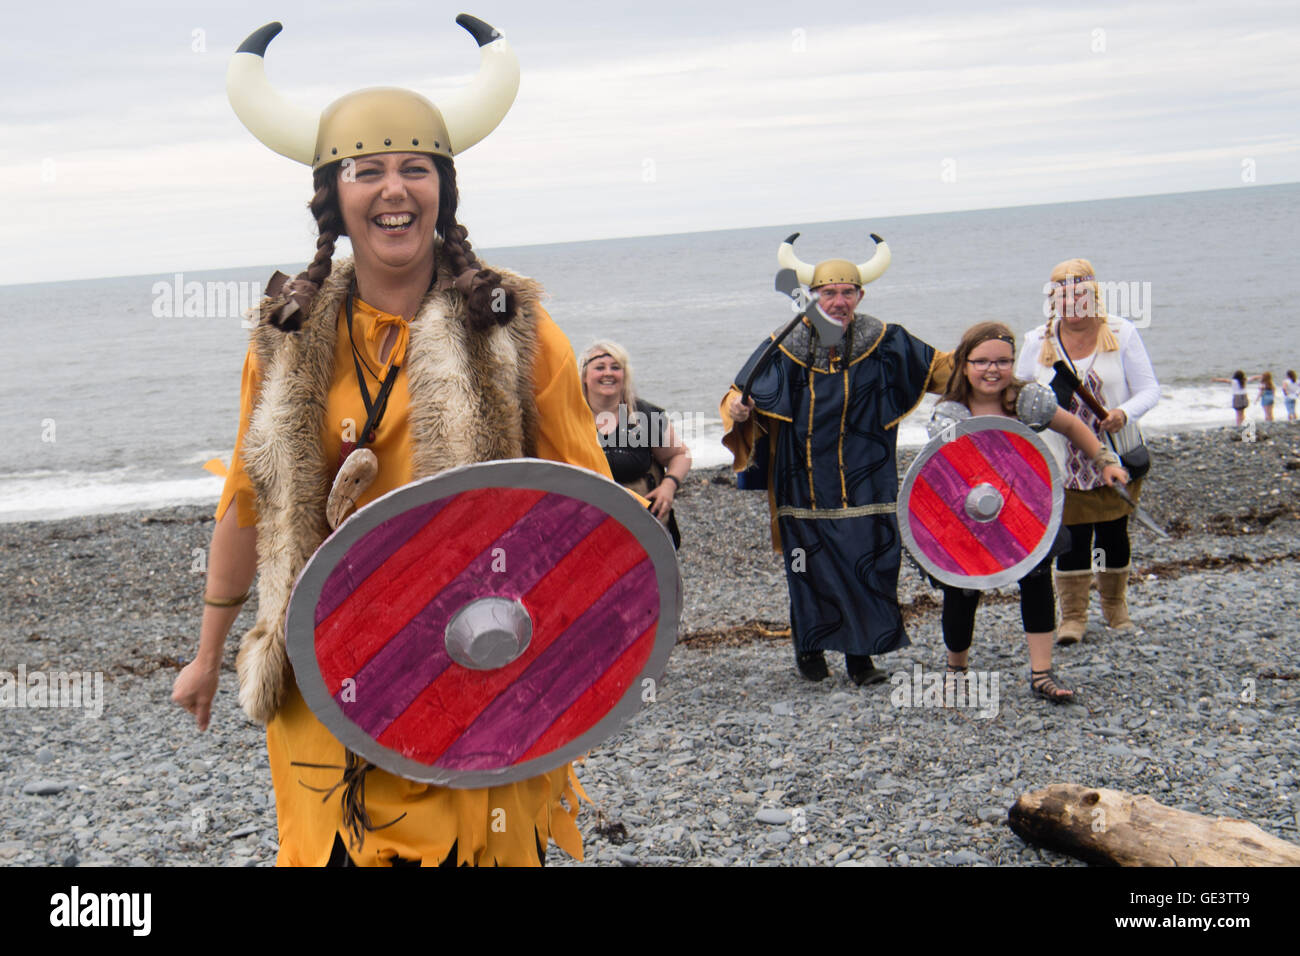 Aberystwyth Wales UK, Samstag, 23. Juli 2016 Gruppe von Menschen in Viking Fancy Dress Kostüme laufen bis zum Strand, die Teilnahme an den jährlichen Karneval und Prozession entlang der Promenade in Aberystwyth auf West Wales Küste Photo Credit: Keith Morris / Alamy Live News Stockfoto